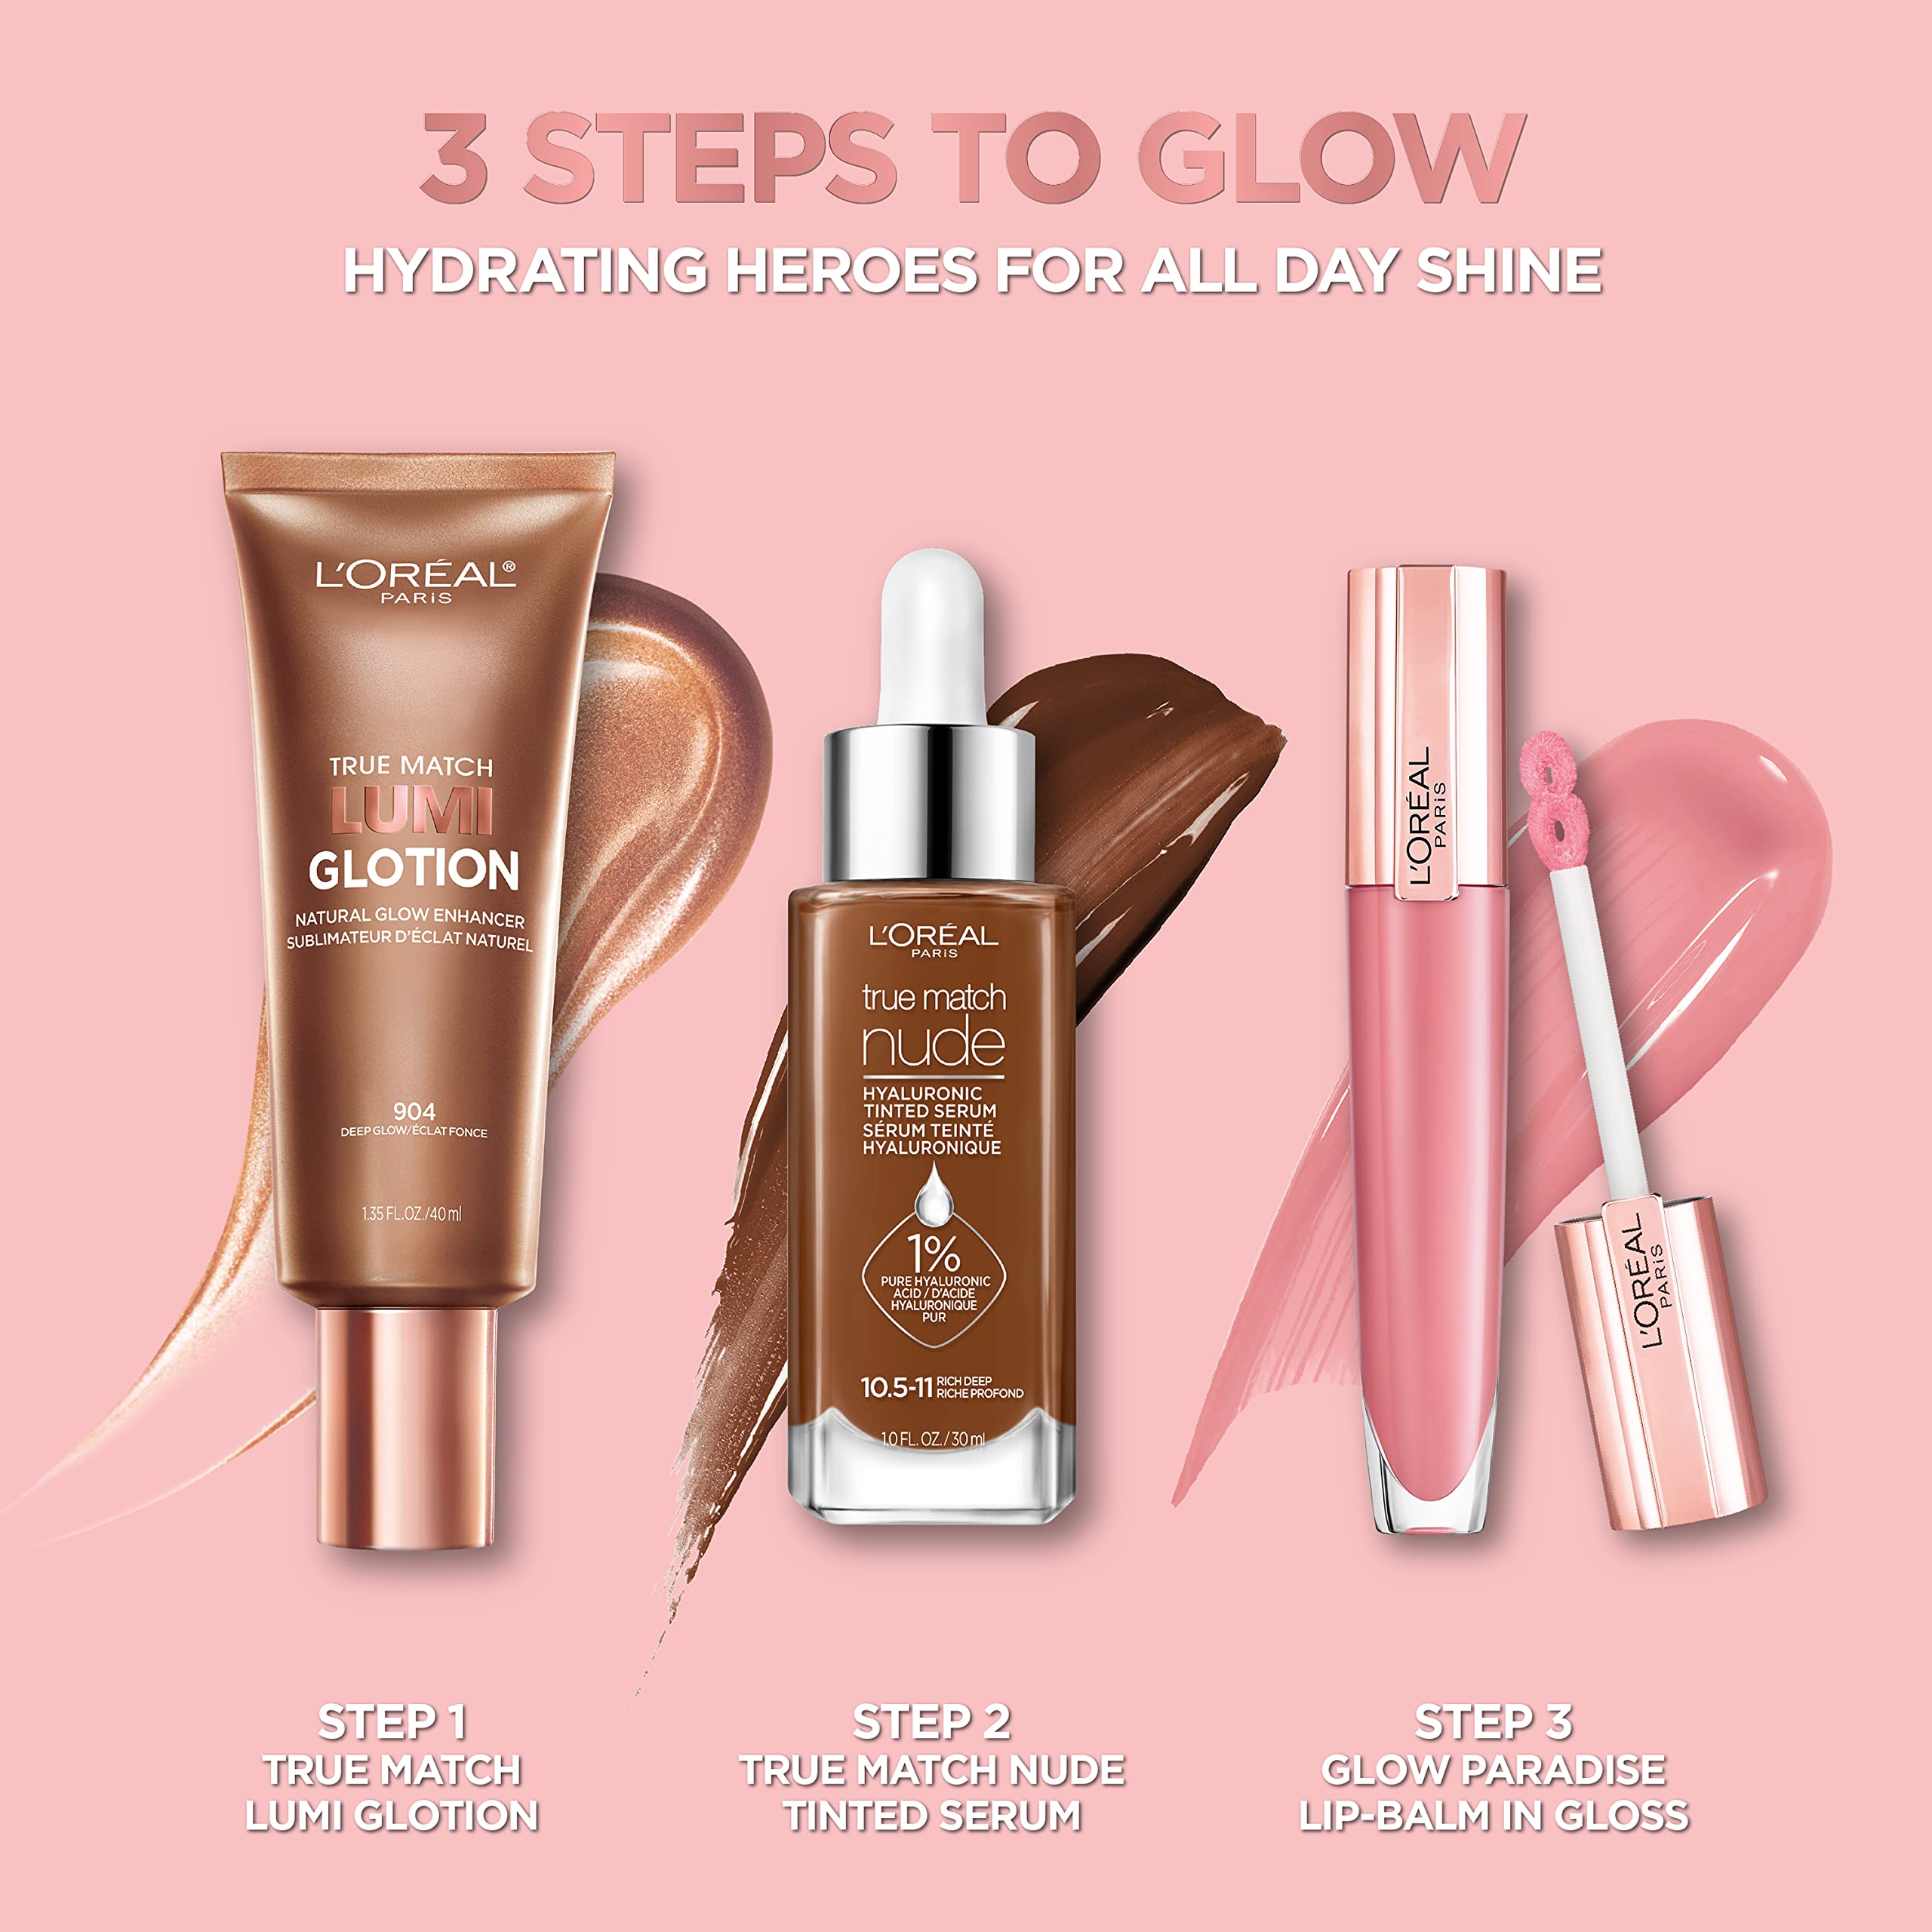 L’Oréal Paris Makeup True Match Lumi Glotion, Natural Glow Enhancer, Illuminator Highlighter Skin Tint, for an All Day Radiant Glow, Deep, 1.35 Ounces